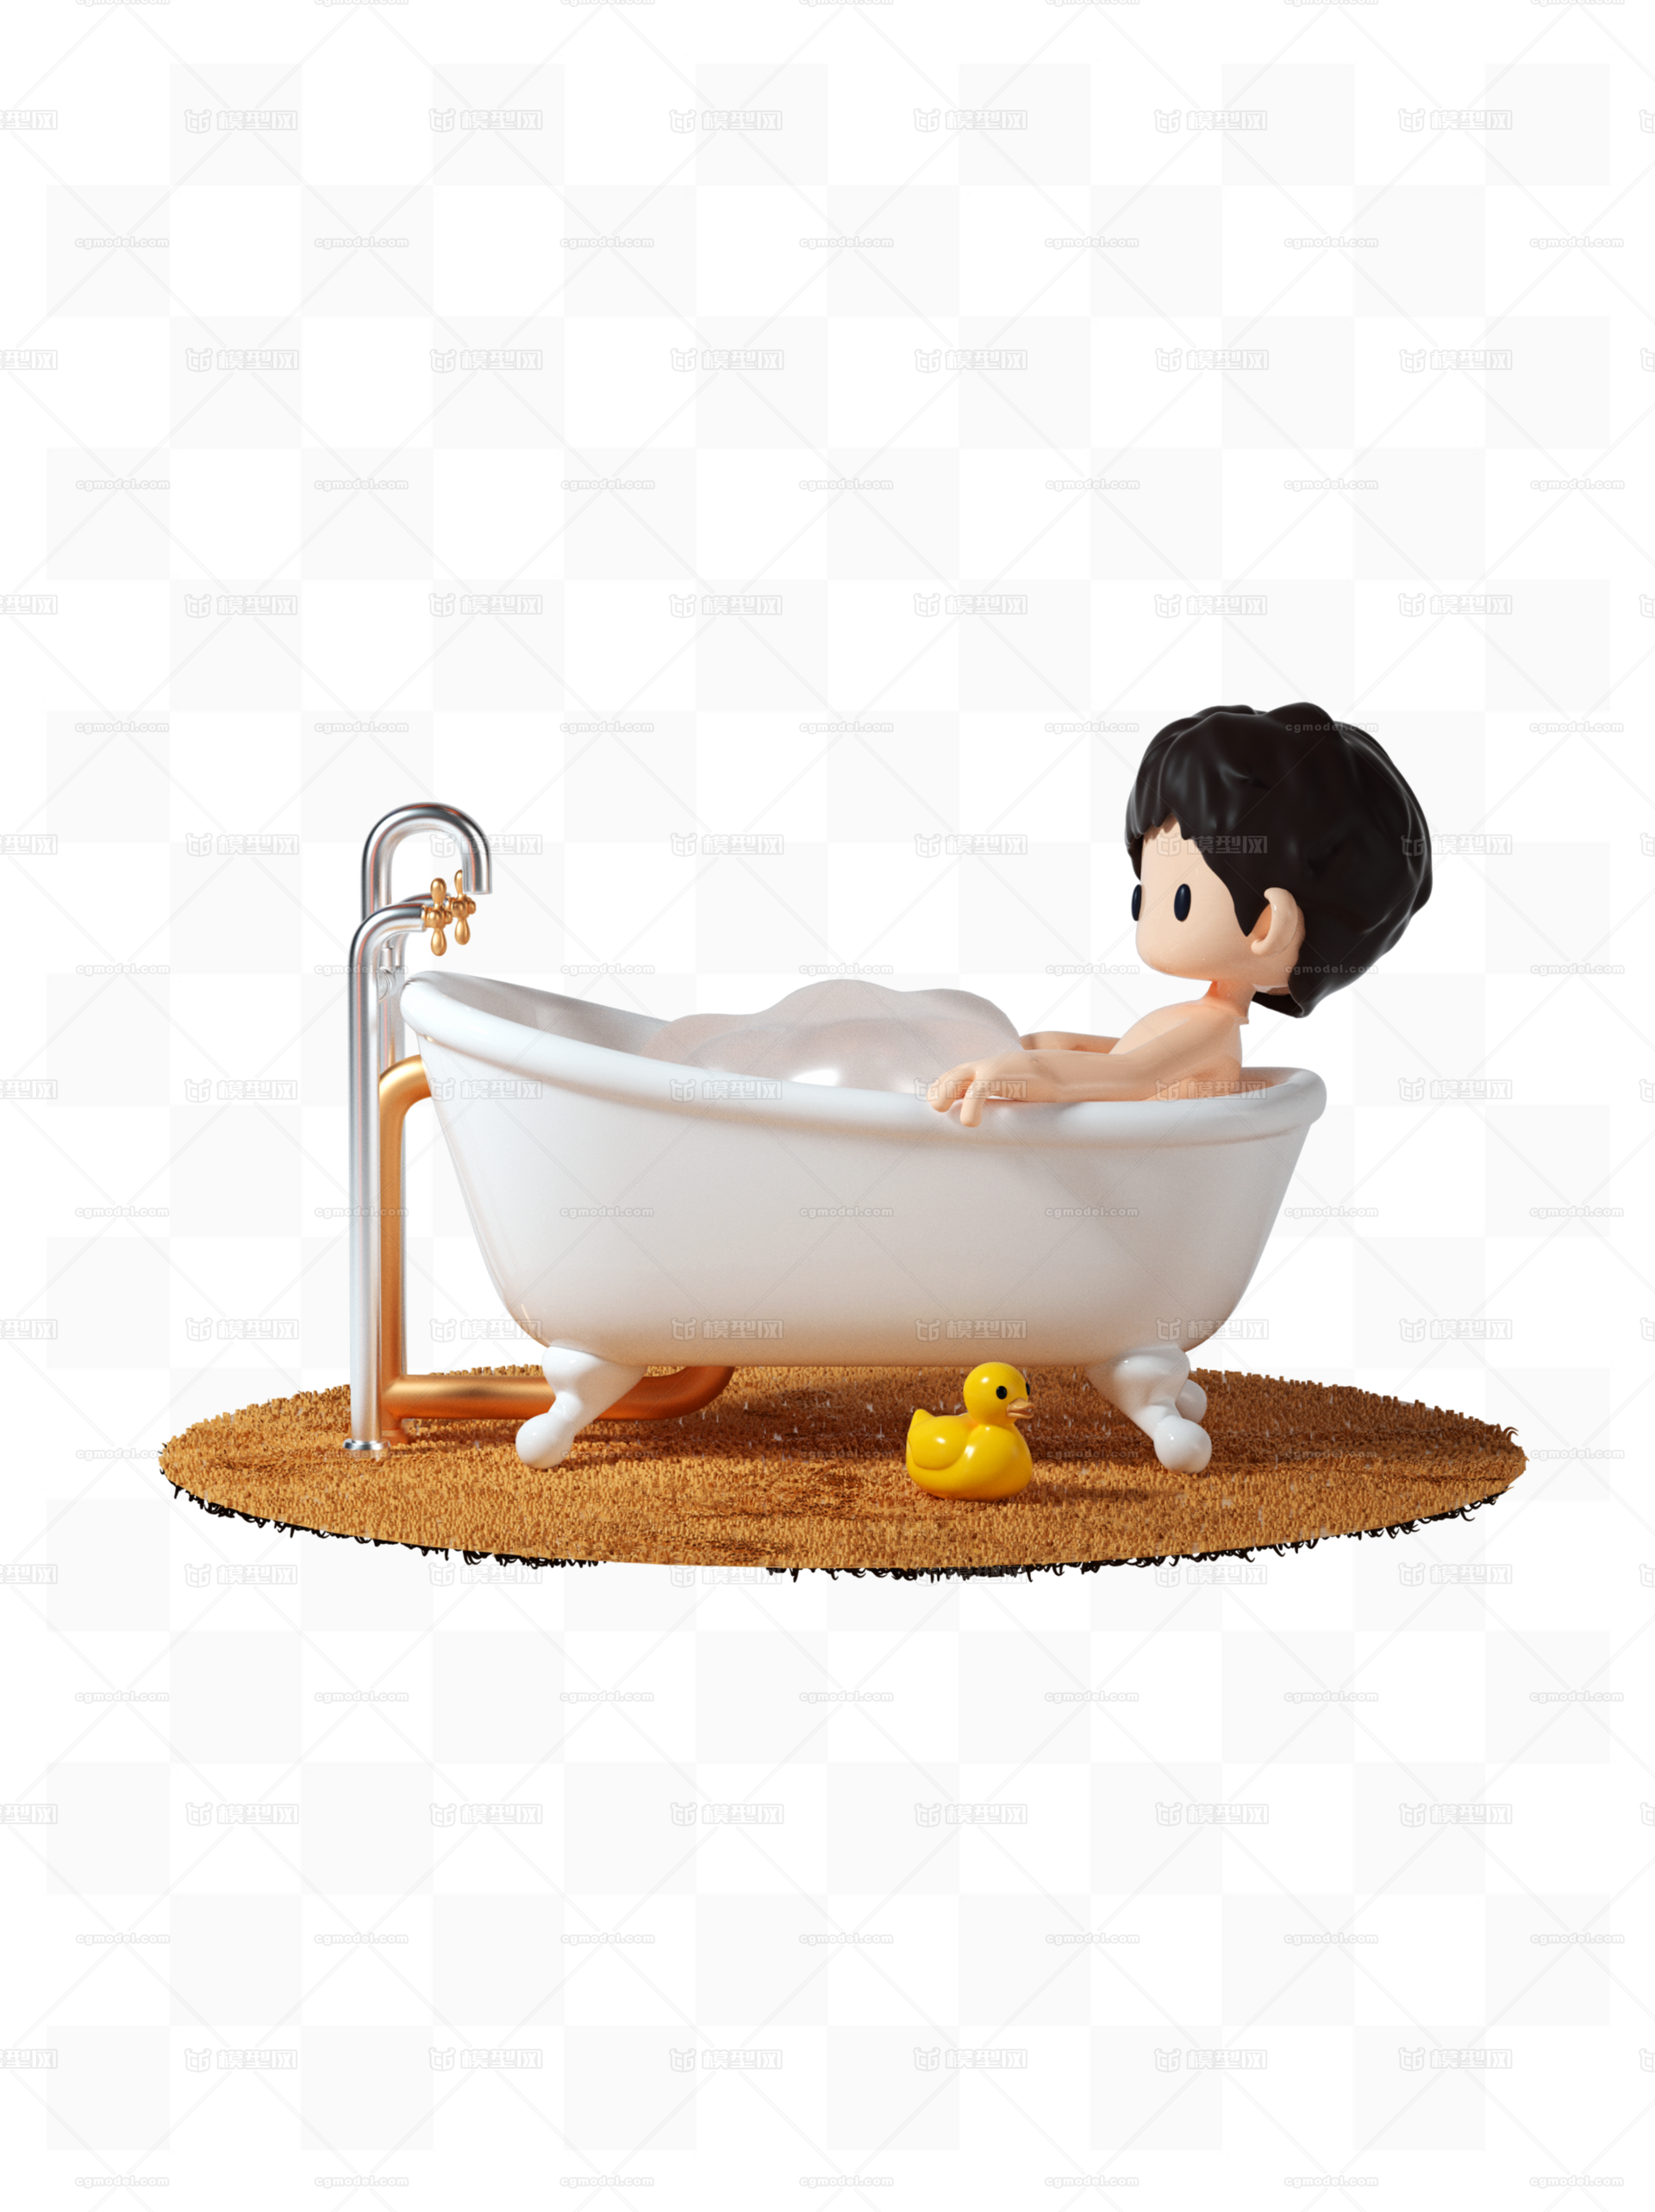 小男孩洗澡农村-图库-五毛网